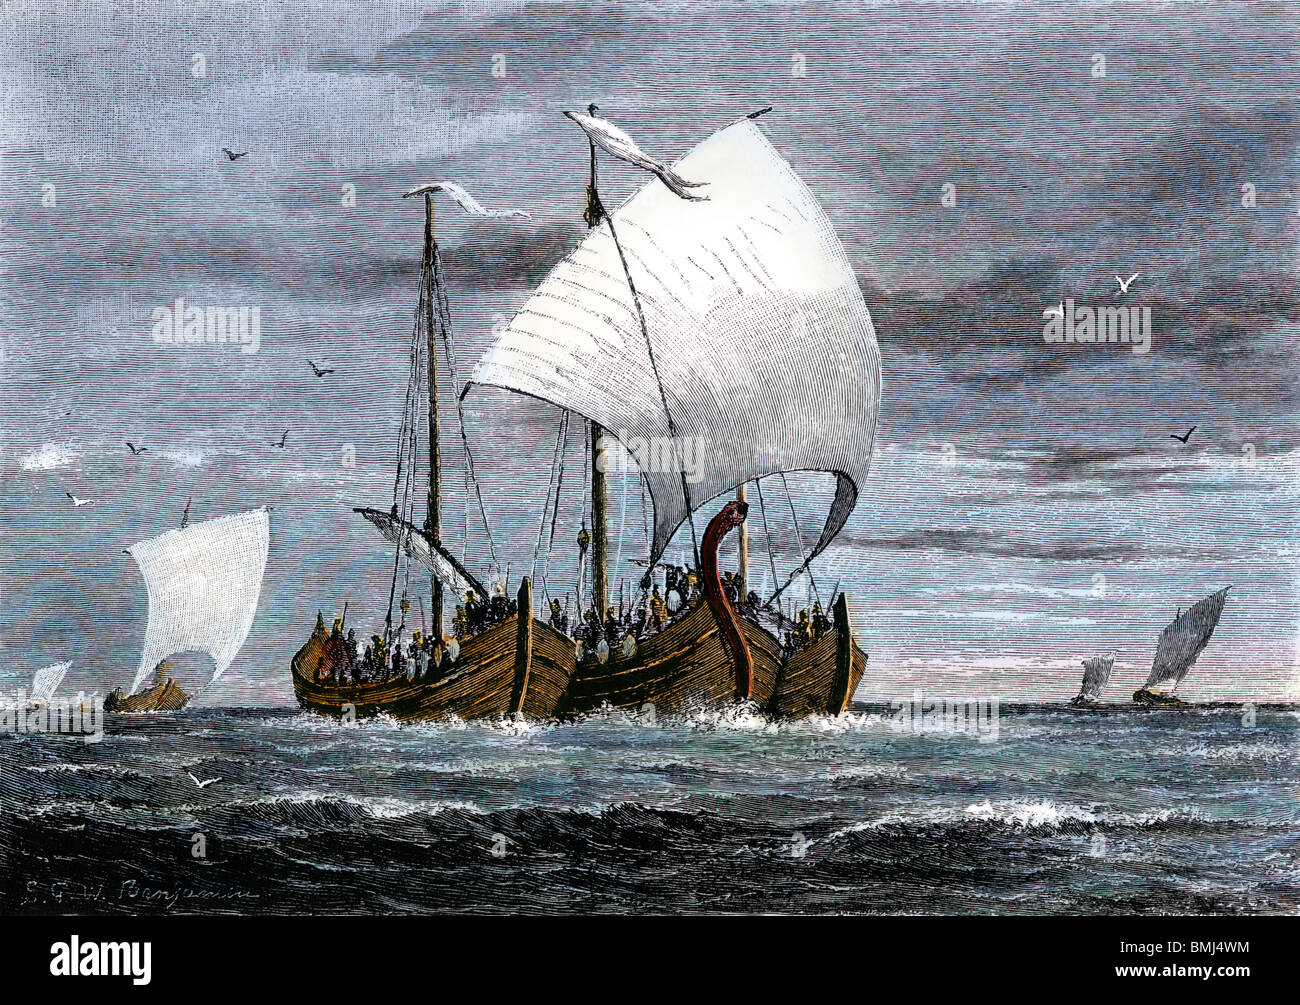 En mer avec les bateaux vikings guerriers à bord. À la main, gravure sur bois Banque D'Images